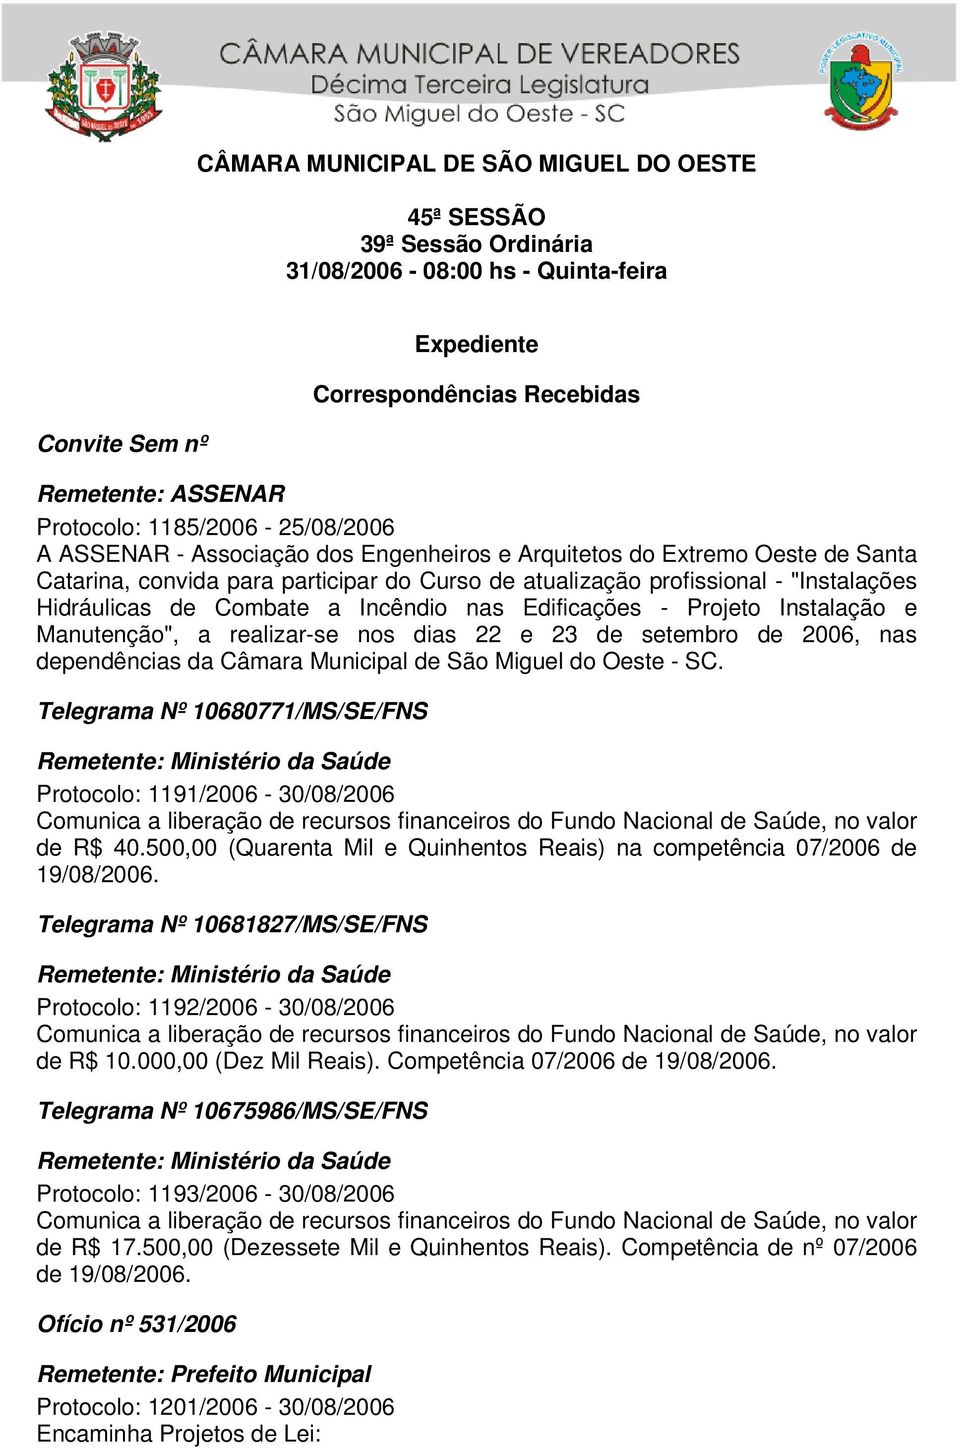 Combate a Incêndio nas Edificações - Projeto Instalação e Manutenção", a realizar-se nos dias 22 e 23 de setembro de 2006, nas dependências da Câmara Municipal de São Miguel do Oeste - SC.